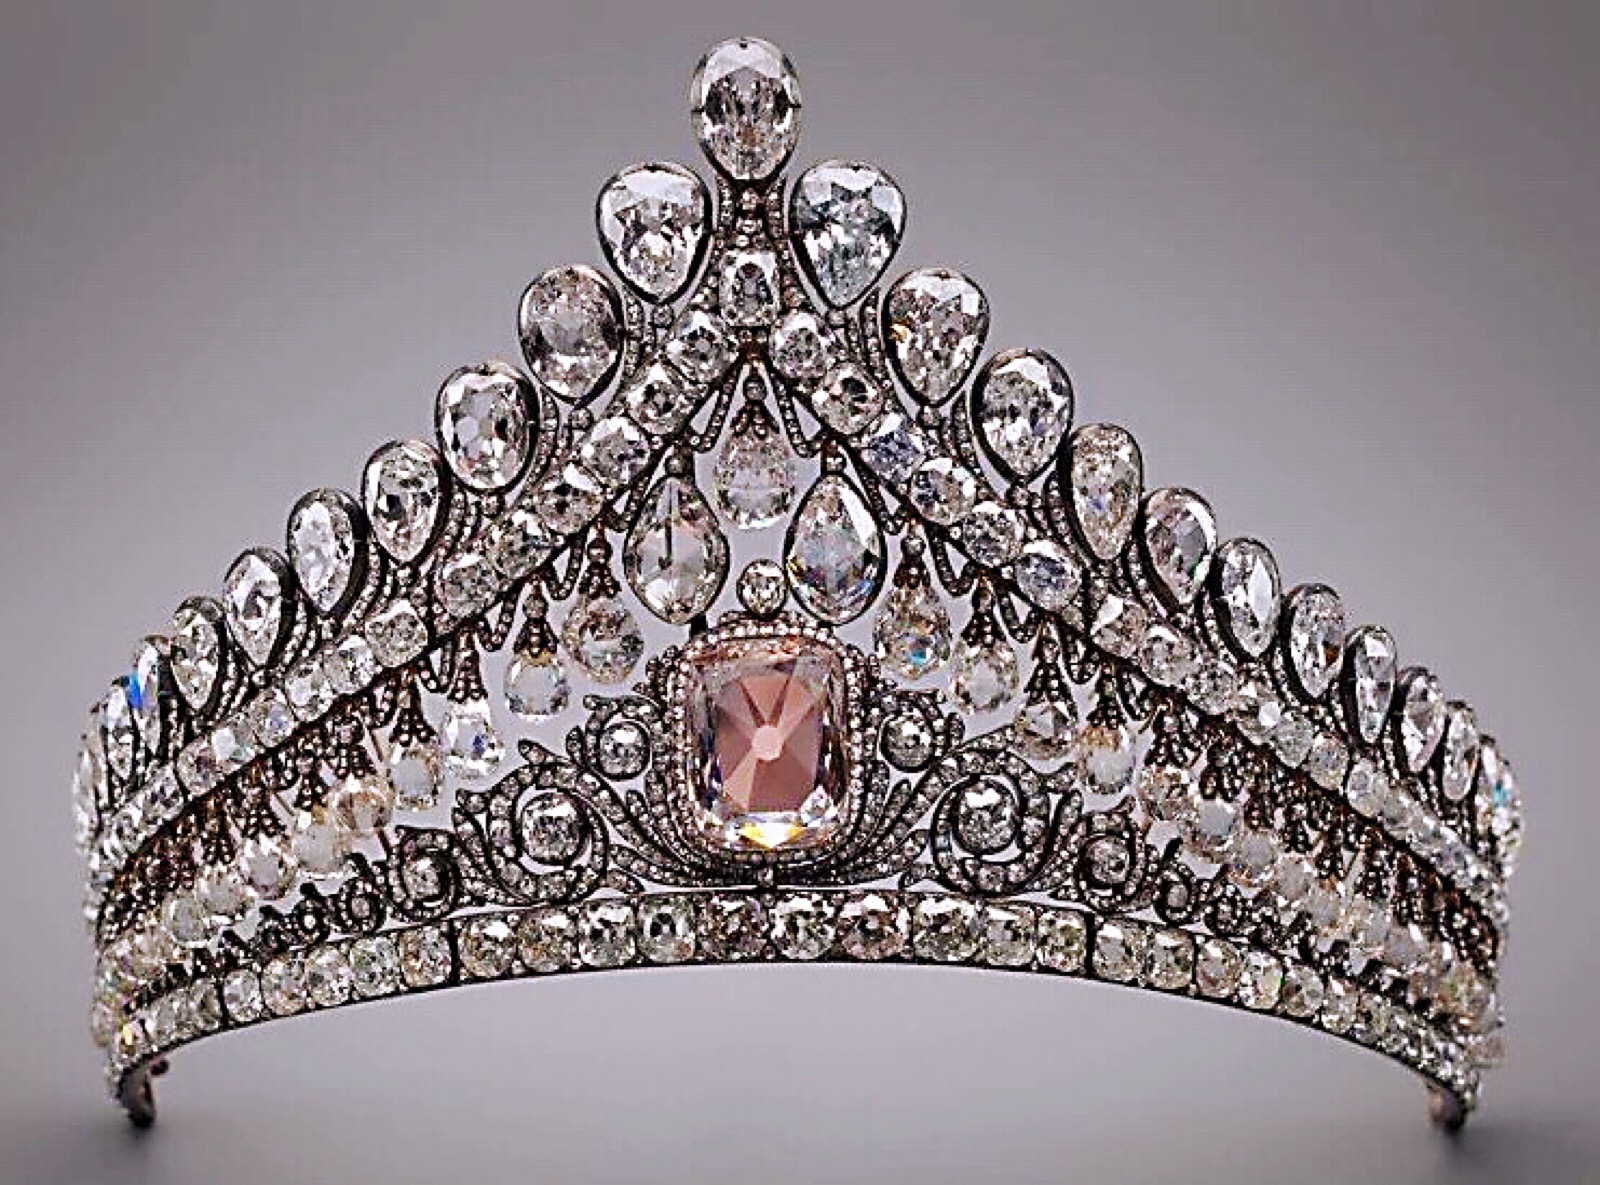 俄罗斯王室婚礼的粉钻王冠,主钻13.